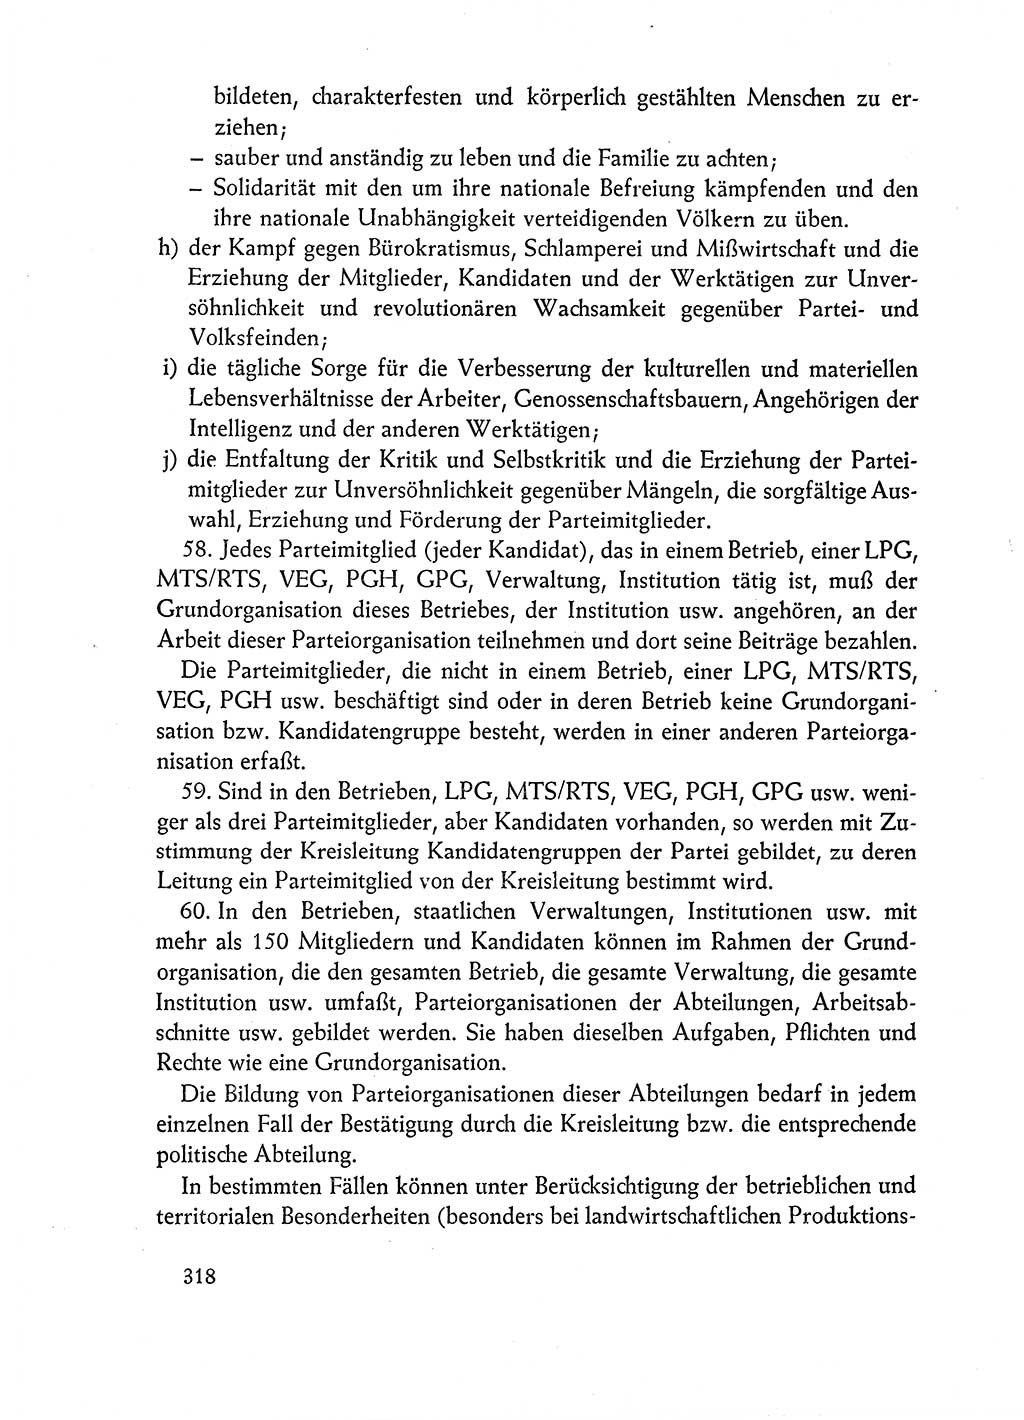 Dokumente der Sozialistischen Einheitspartei Deutschlands (SED) [Deutsche Demokratische Republik (DDR)] 1962-1963, Seite 318 (Dok. SED DDR 1962-1963, S. 318)